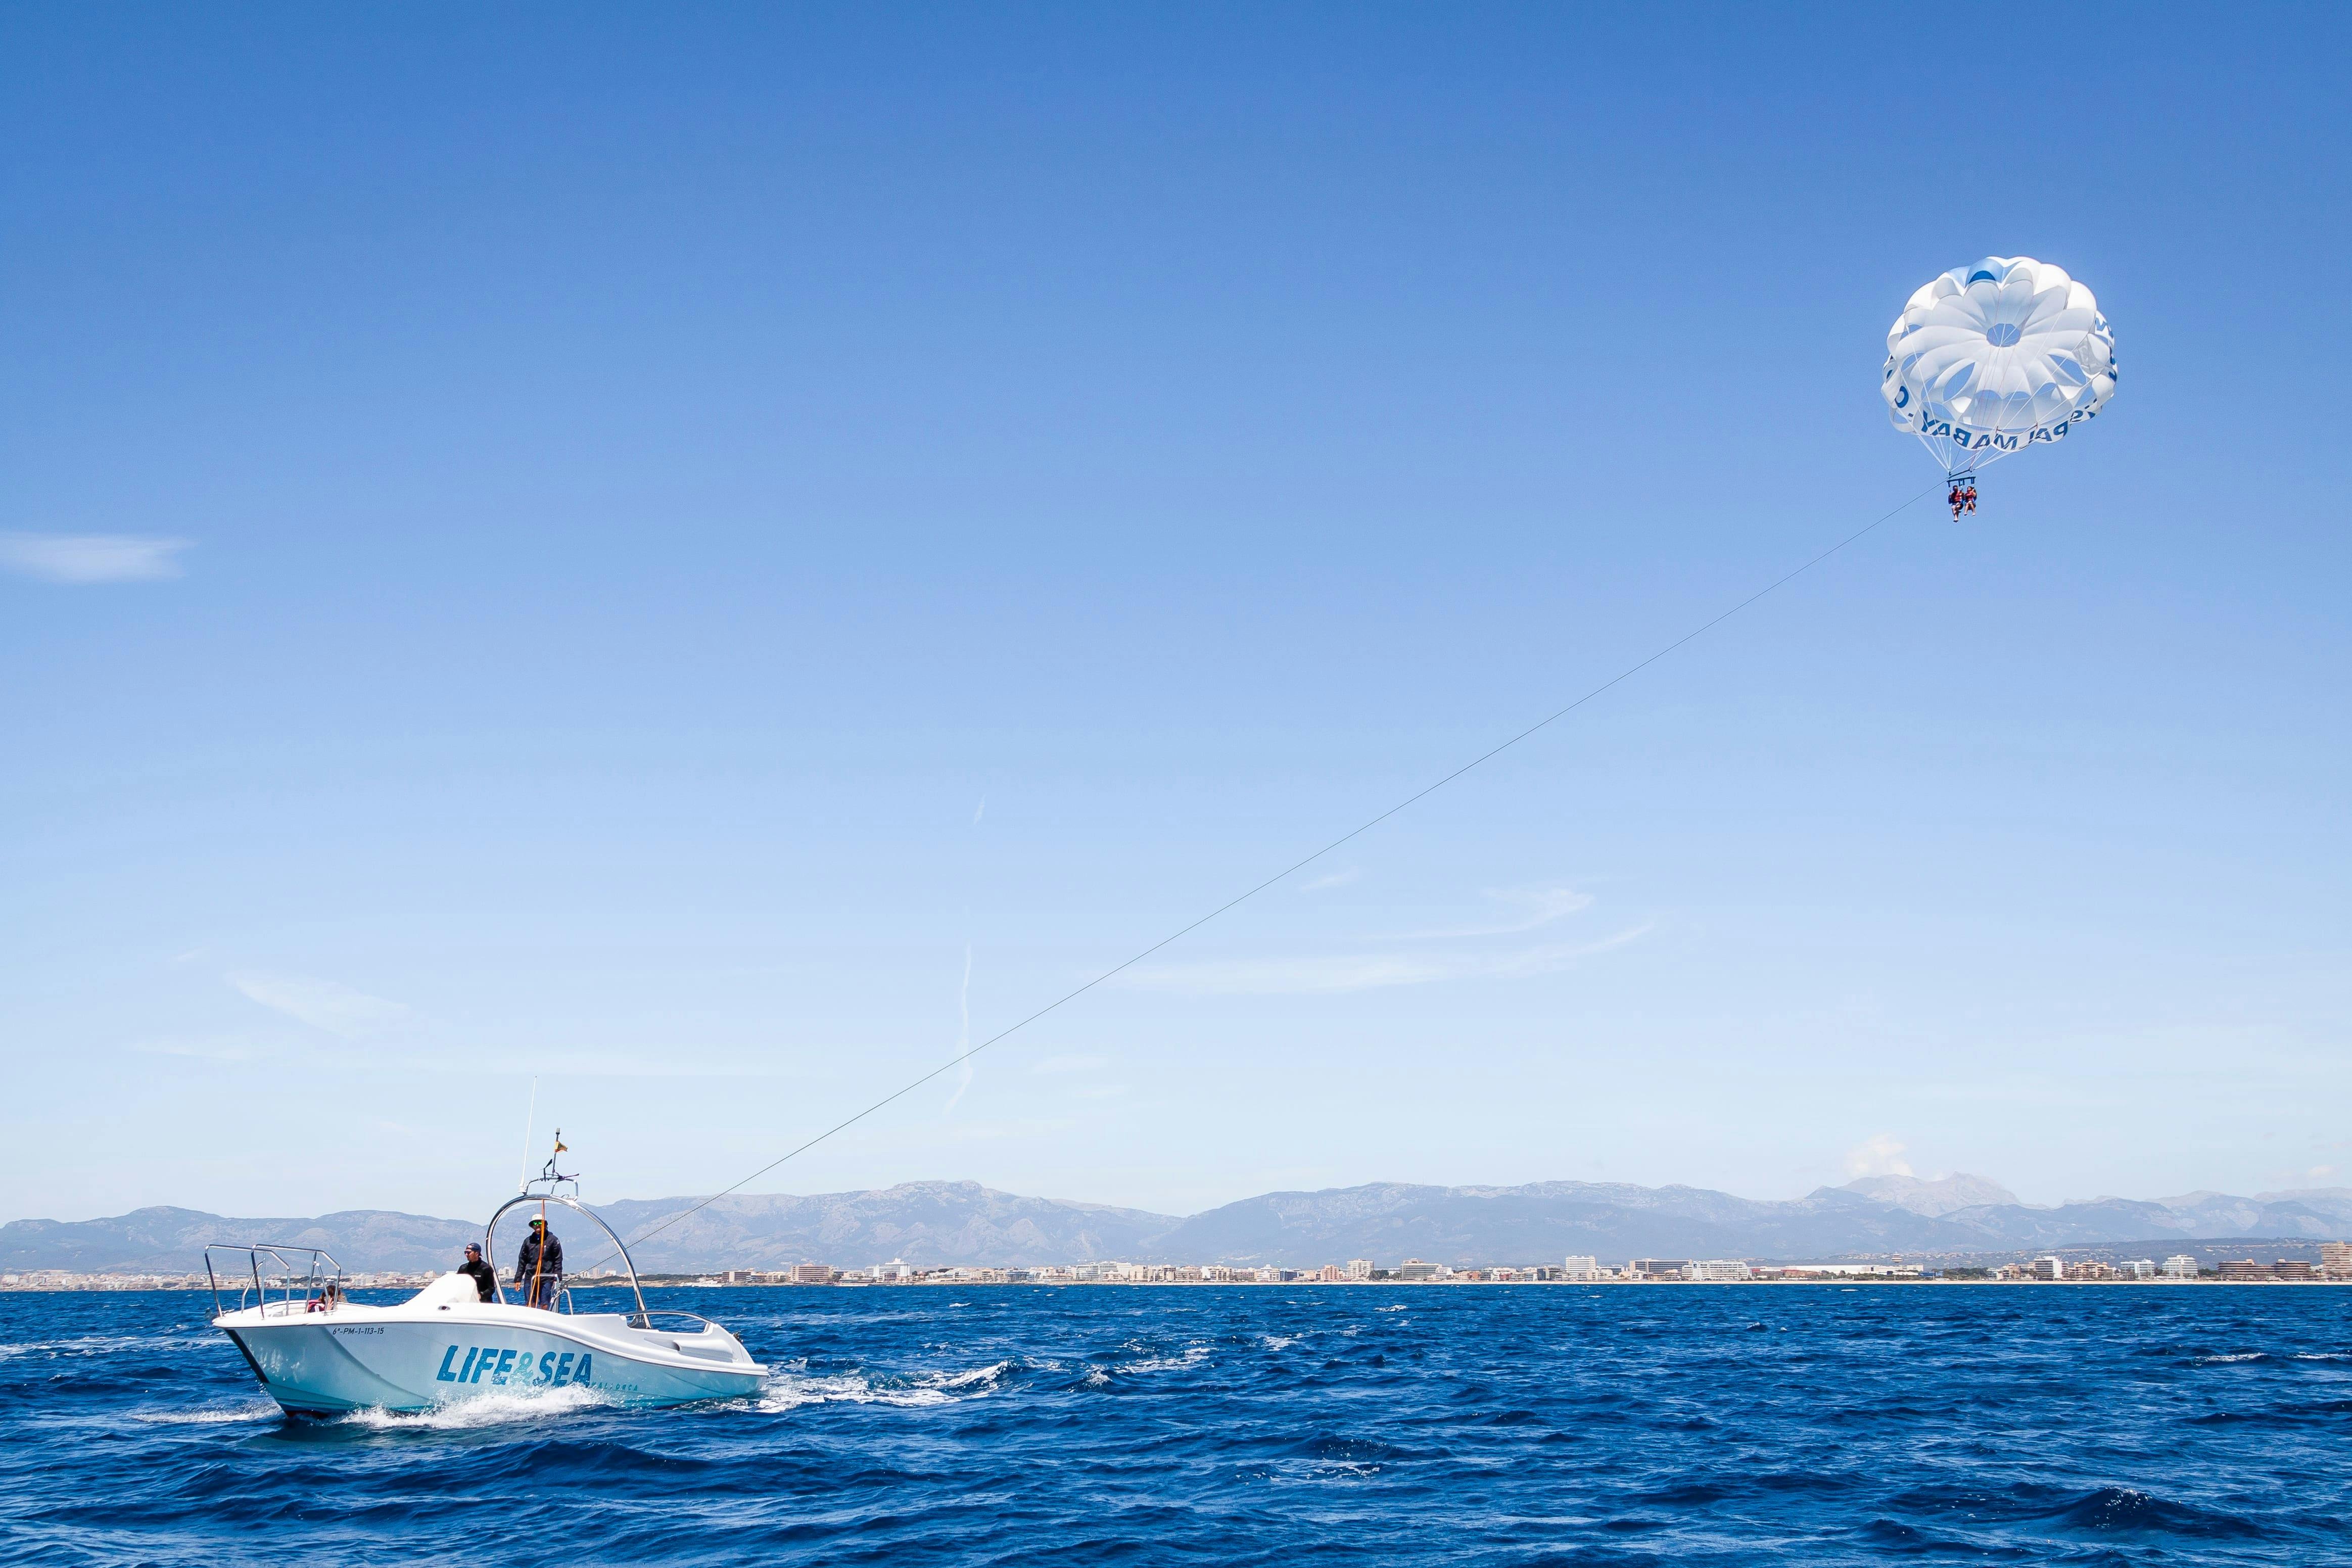 Playa de Palma billet til parasailing med Life & Sea